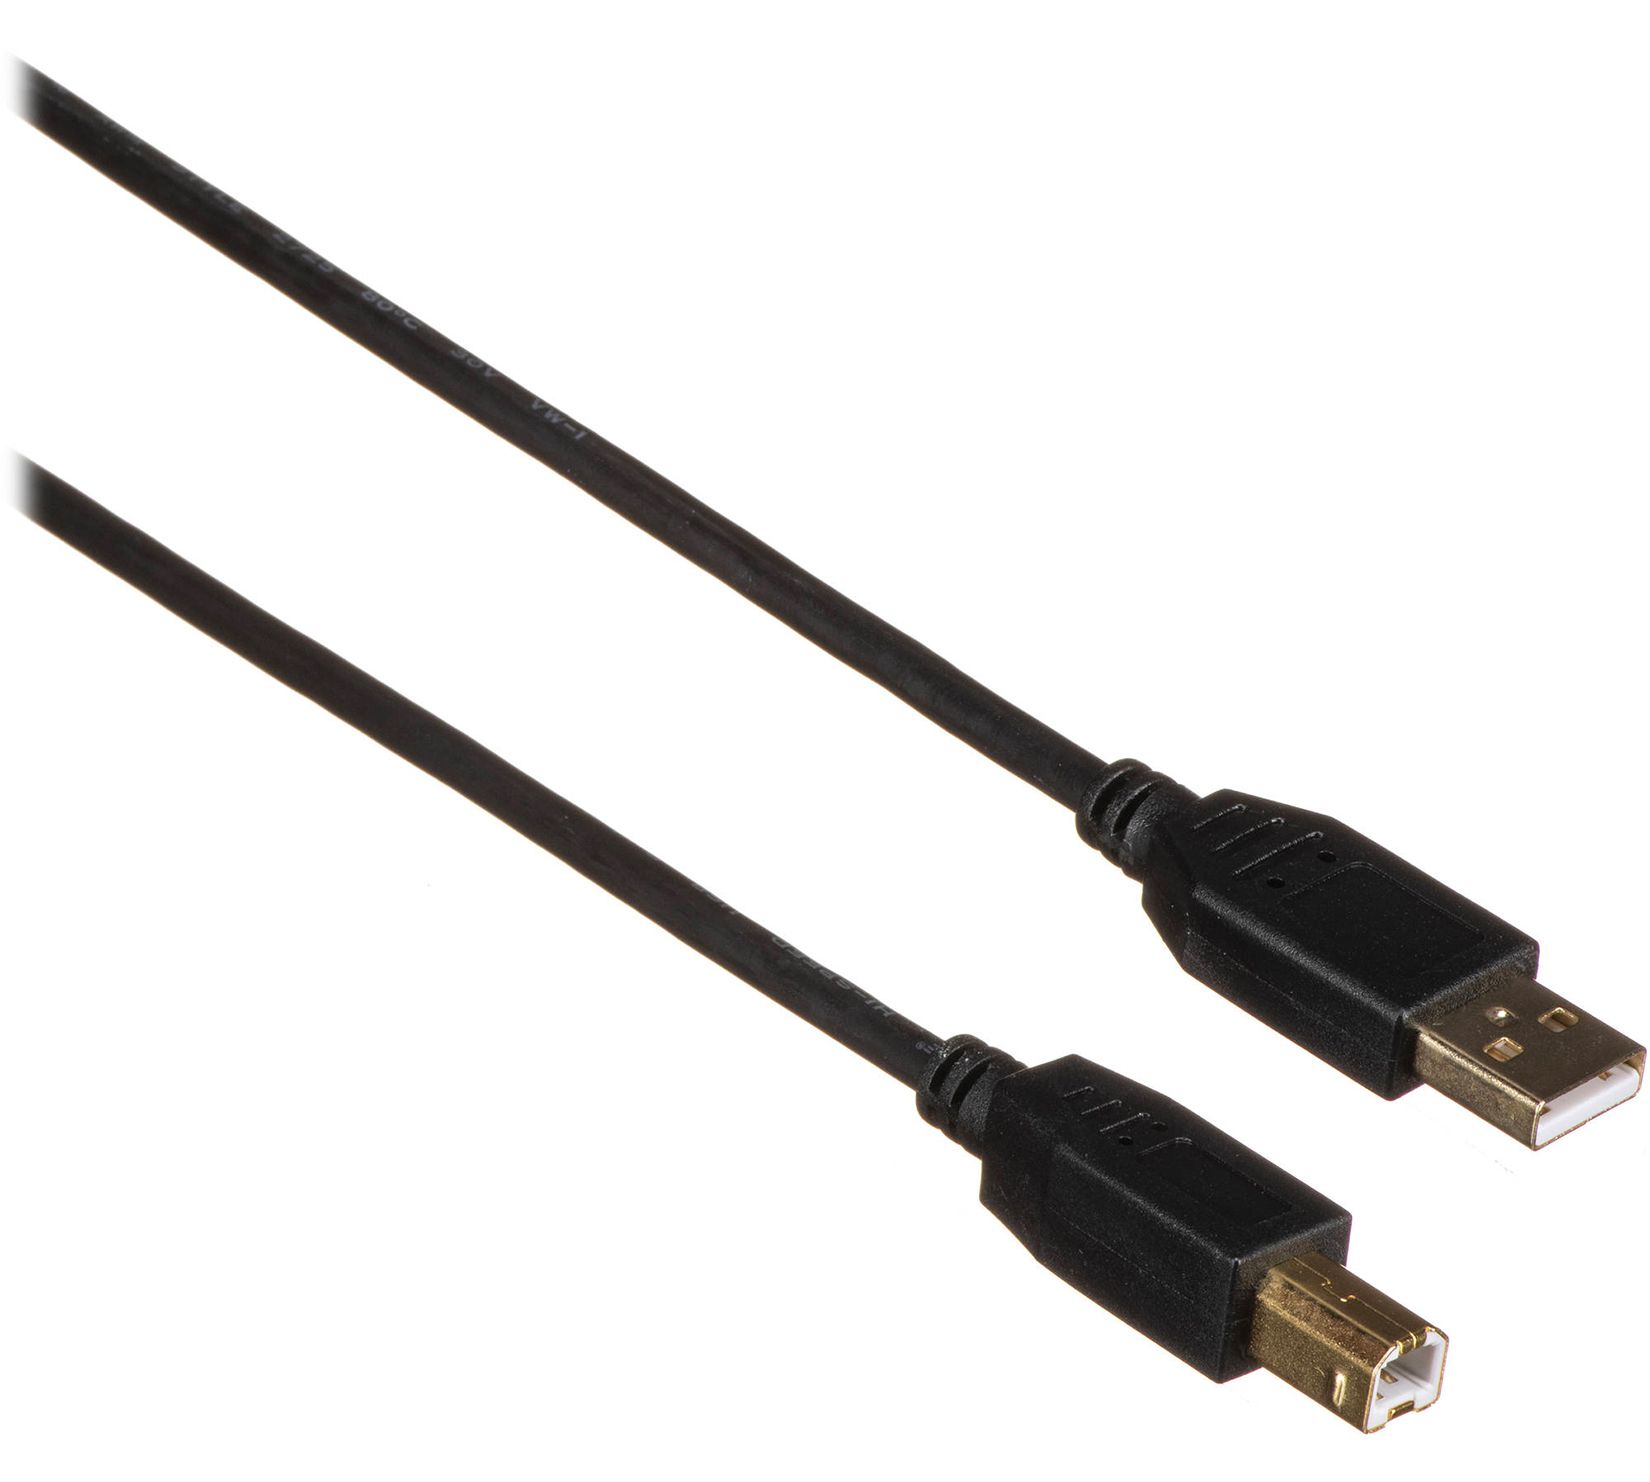 ARRI - SkyPanel Remote USB Cable 5m